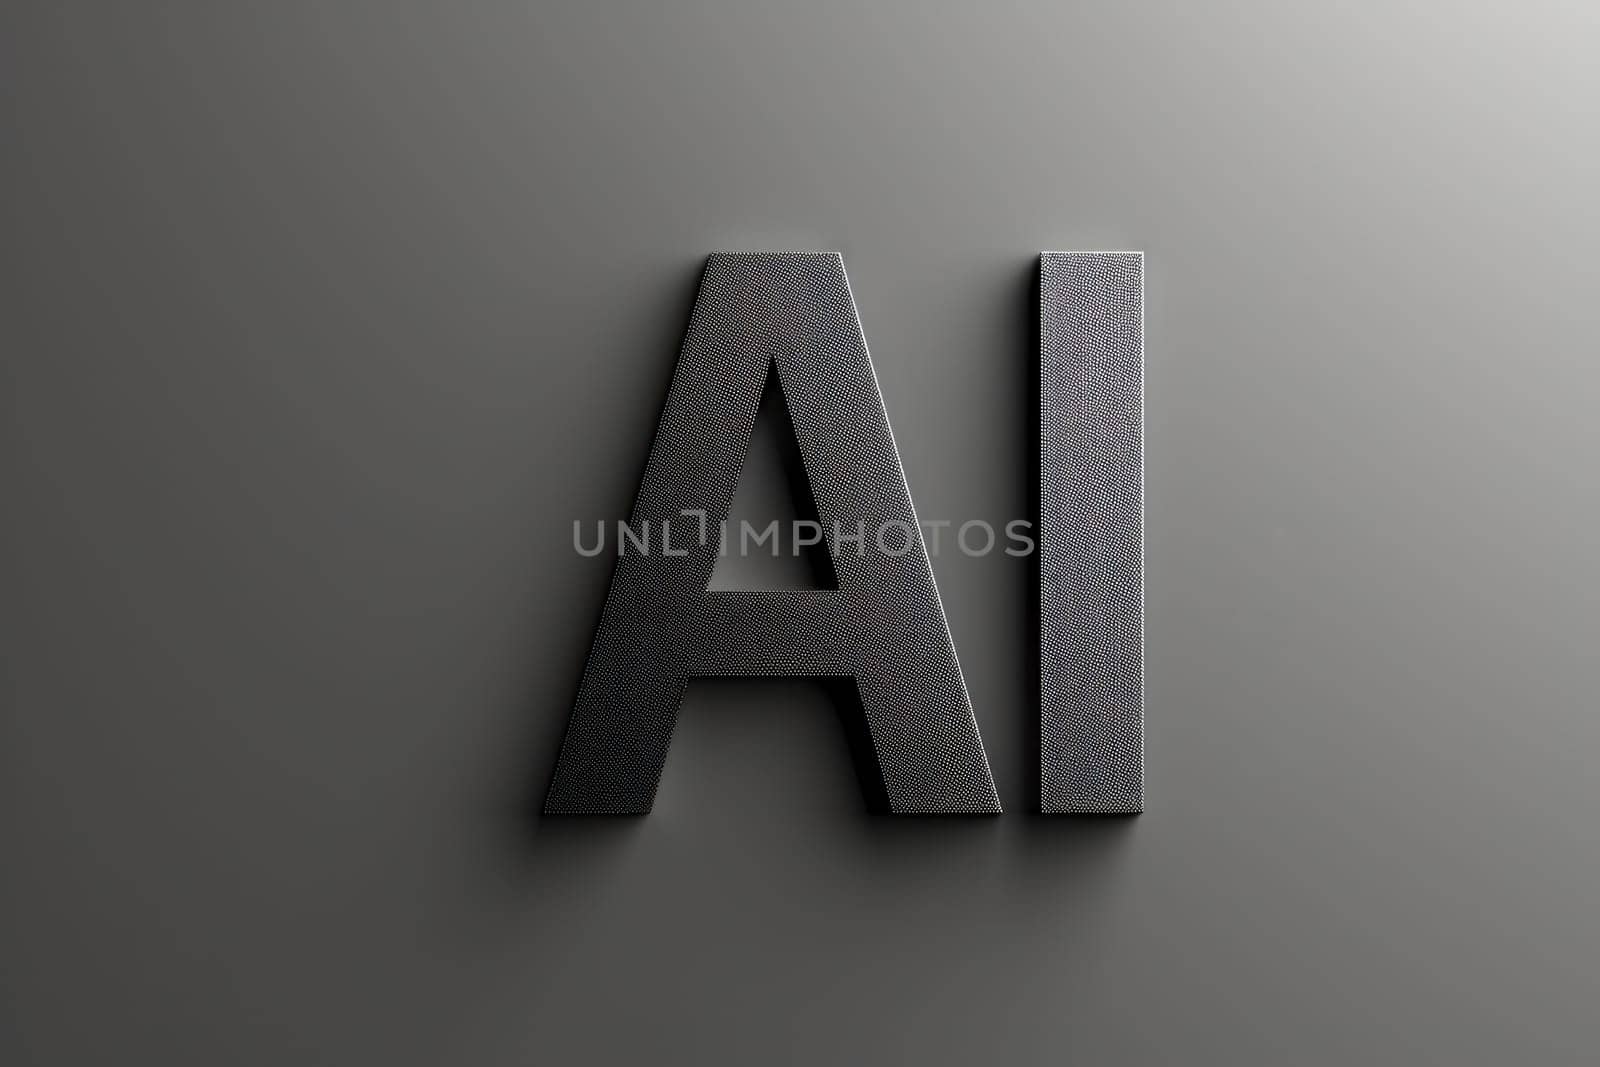 minimalistic style AI letters sign. Generative AI.